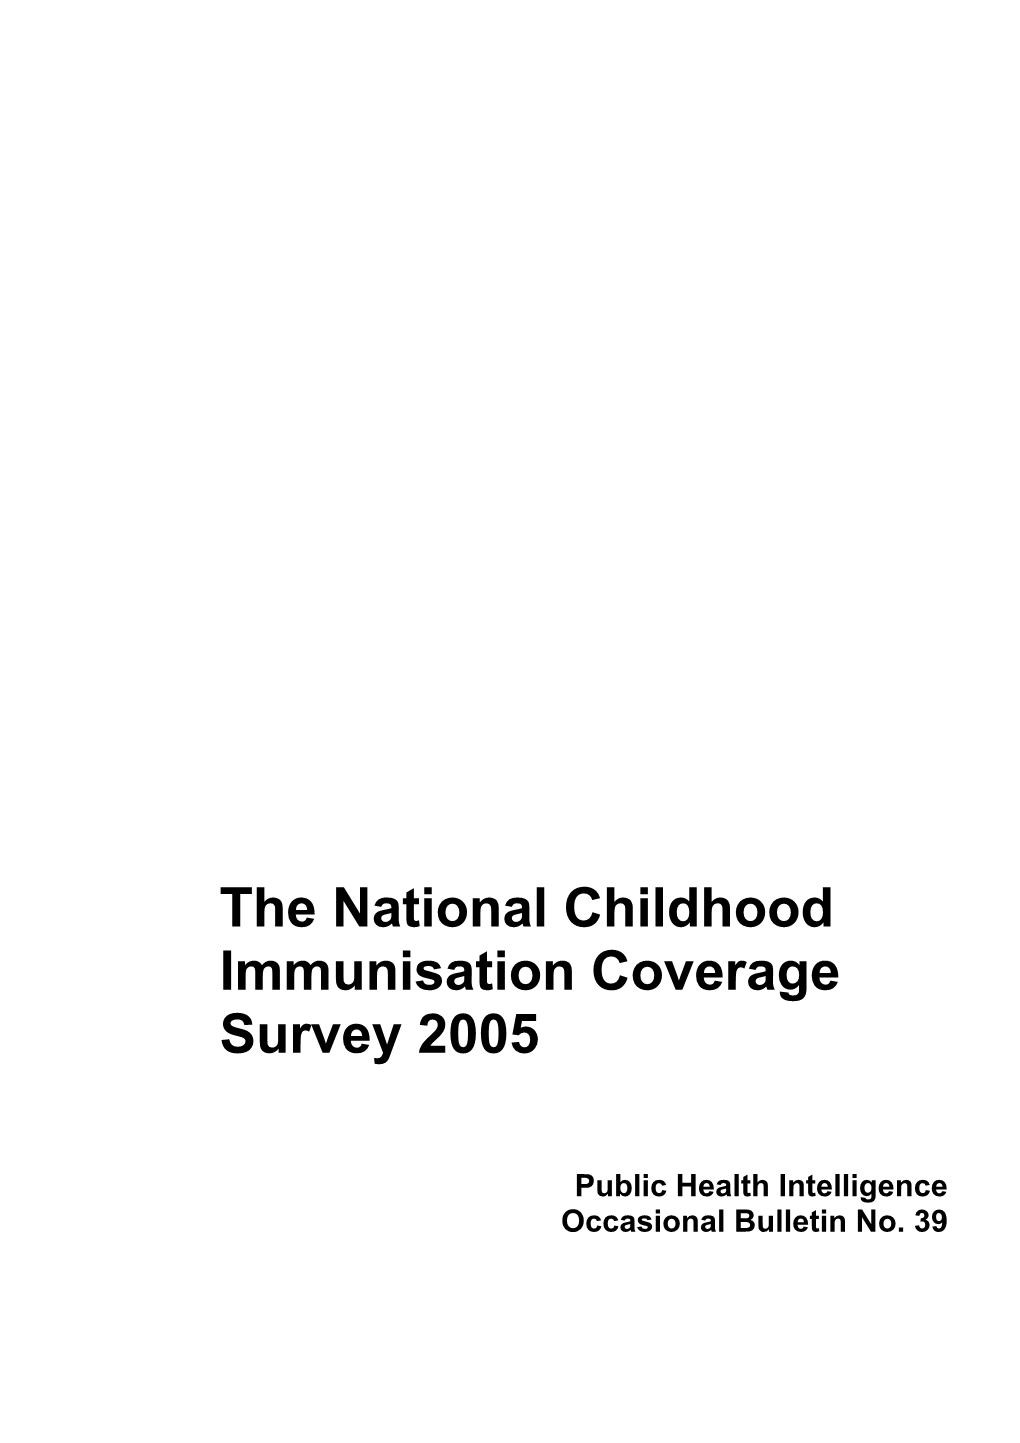 The National Childhood Immunisation Coverage Survey 2005